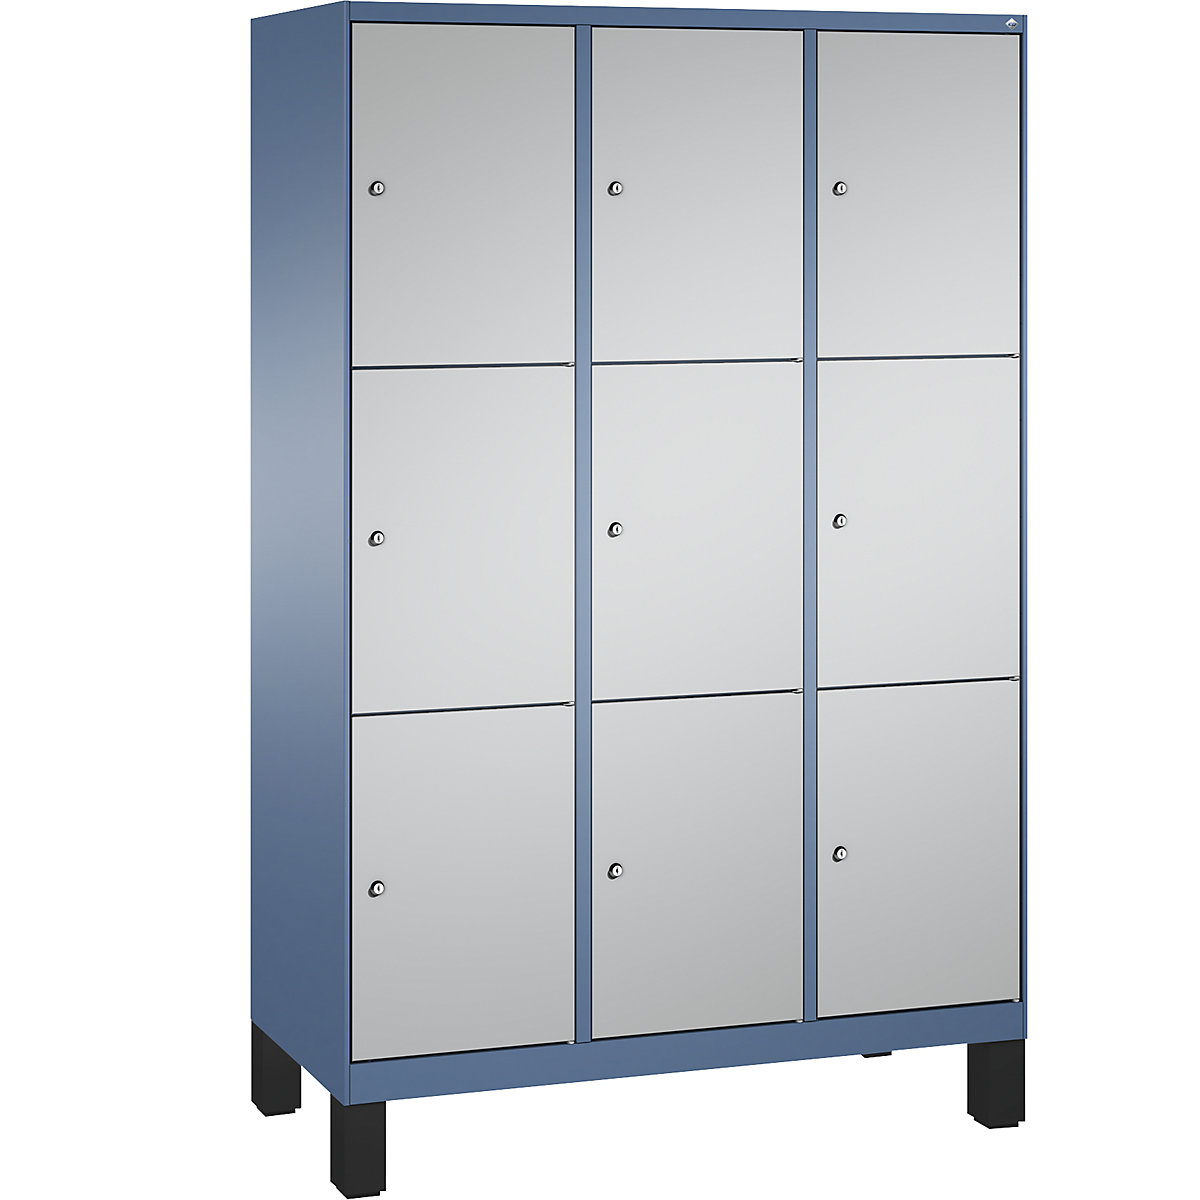 Armoire à casiers sur pieds EVOLO – C+P, 3 compartiments, 3 casiers chacun, largeur compartiments 400 mm, bleu distant / aluminium-6